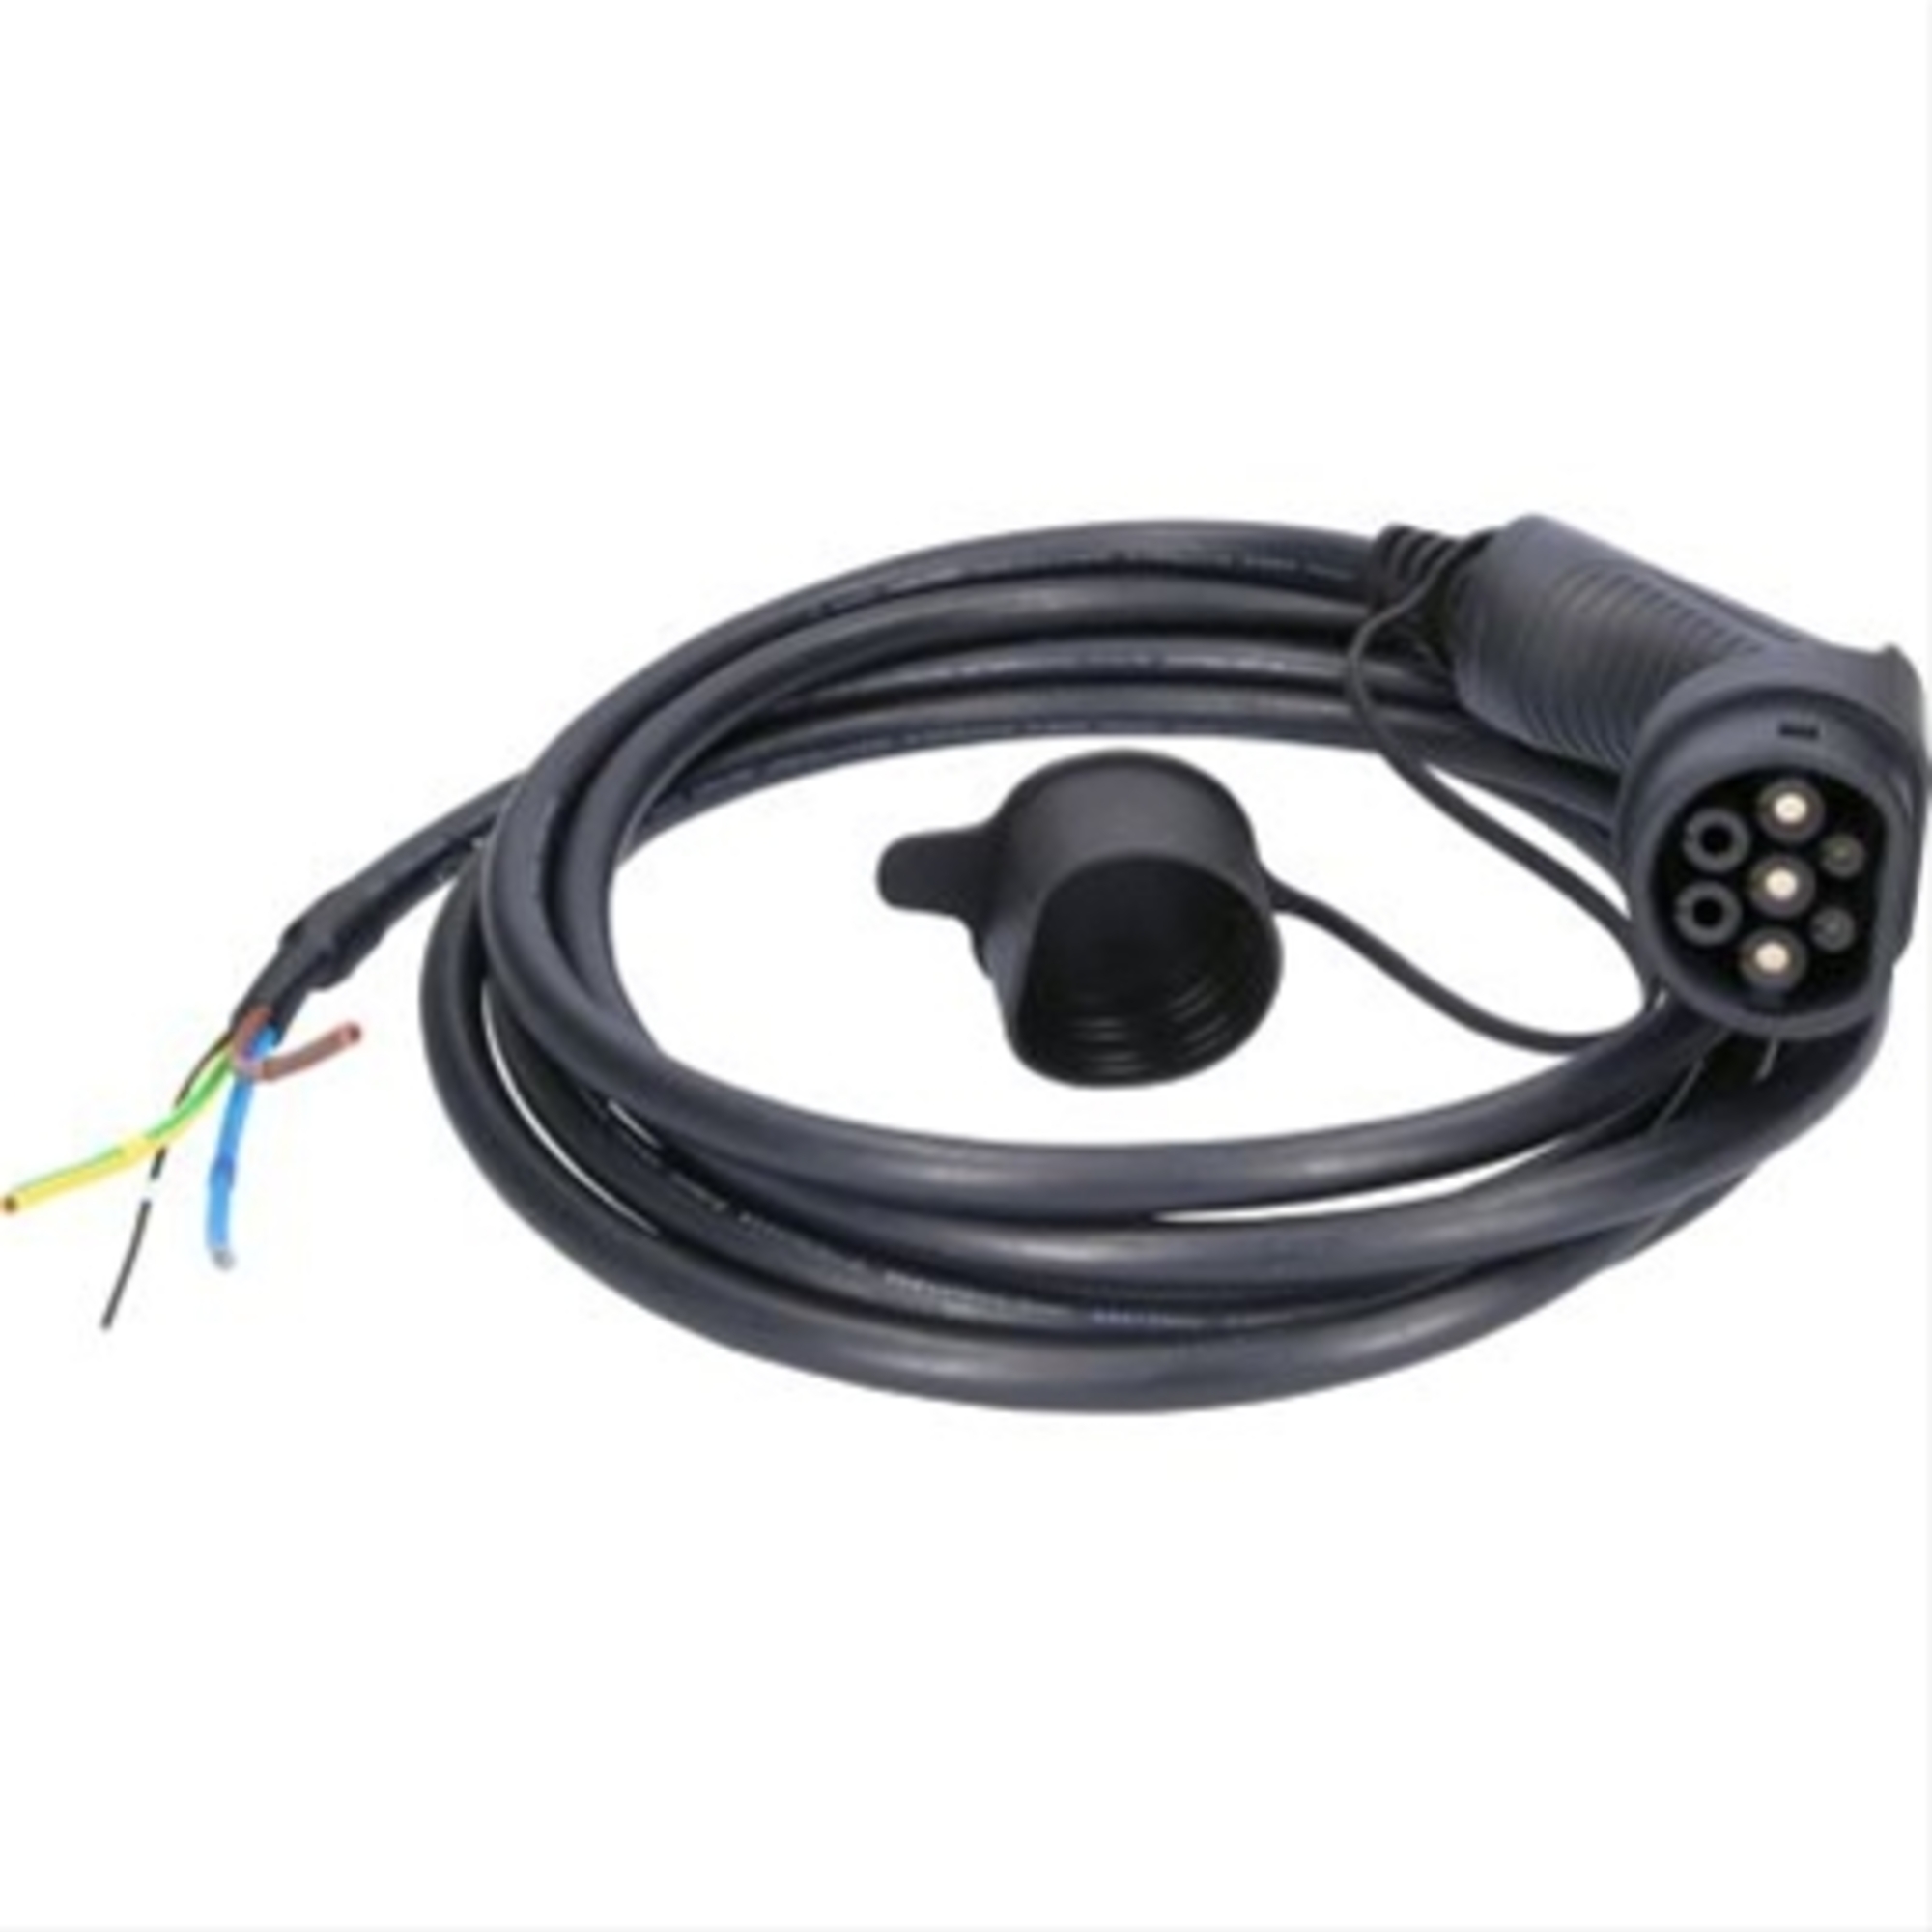 Cablu de incarcare capat deschis / typ 2 7.4 kw 230 v 32 a 5m-efuturo ks-tools